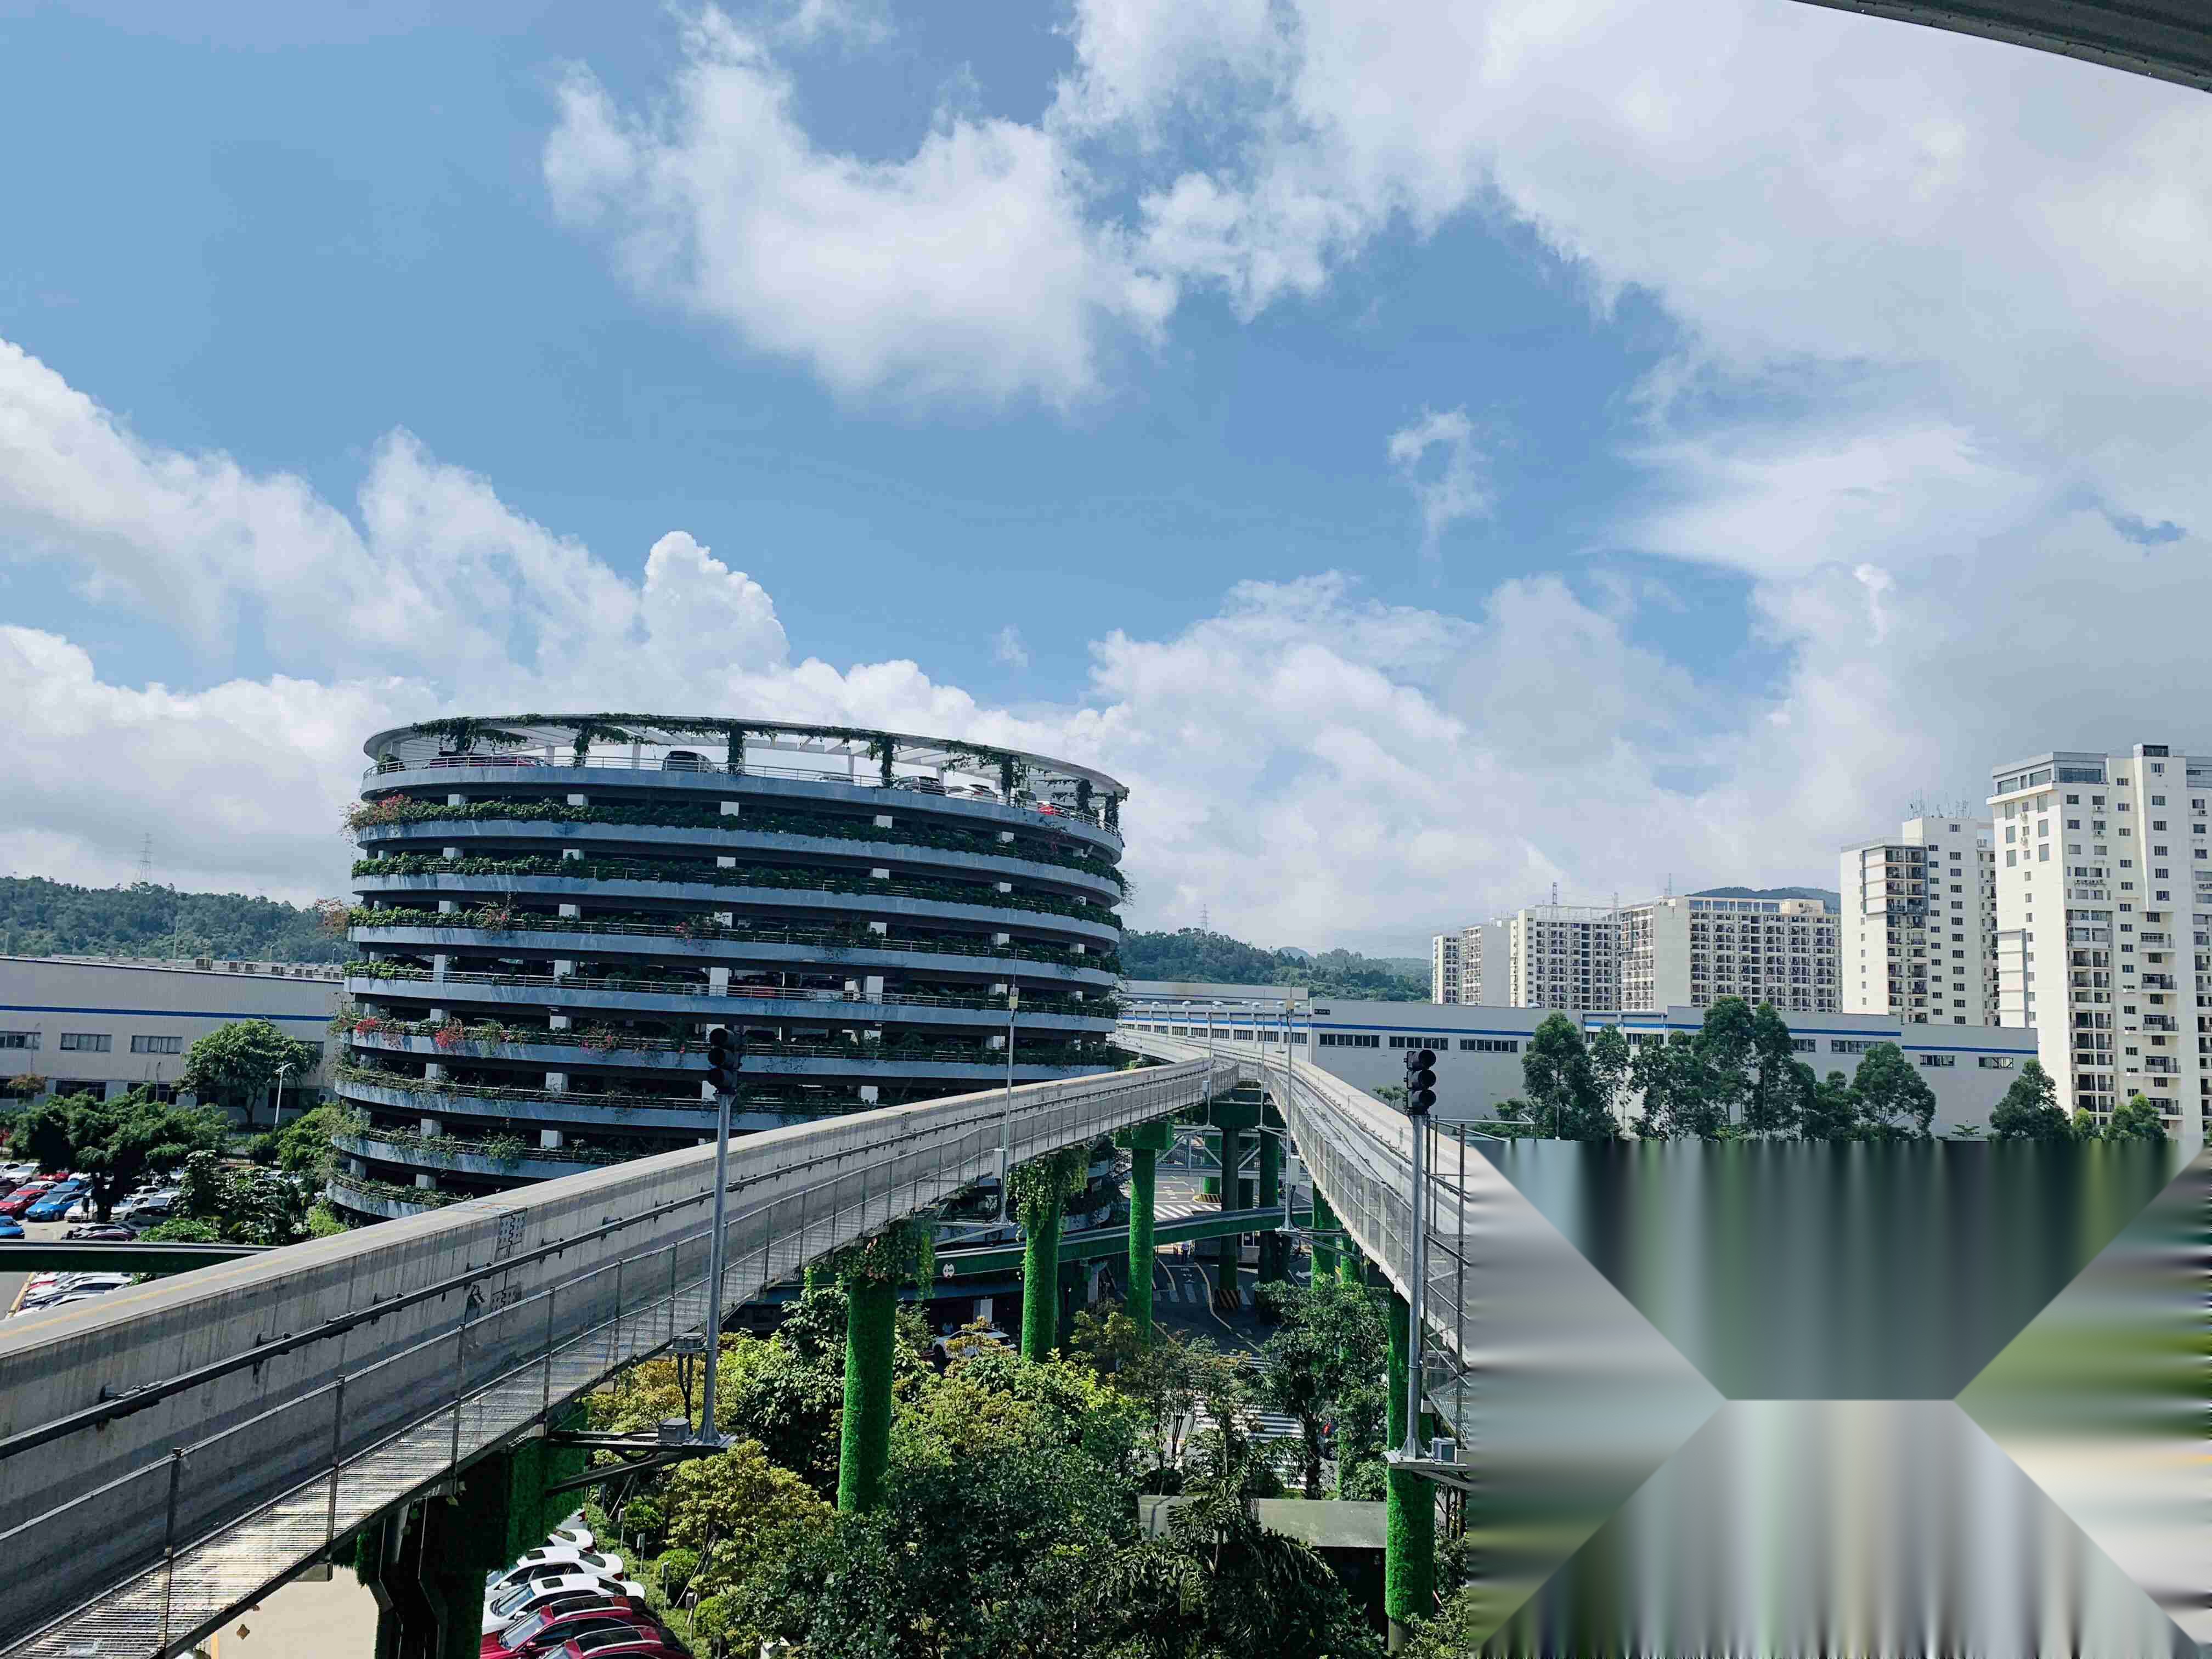 的六角大楼是全球新能源代表——比亚迪的研发总部,坐落于深圳坪山!